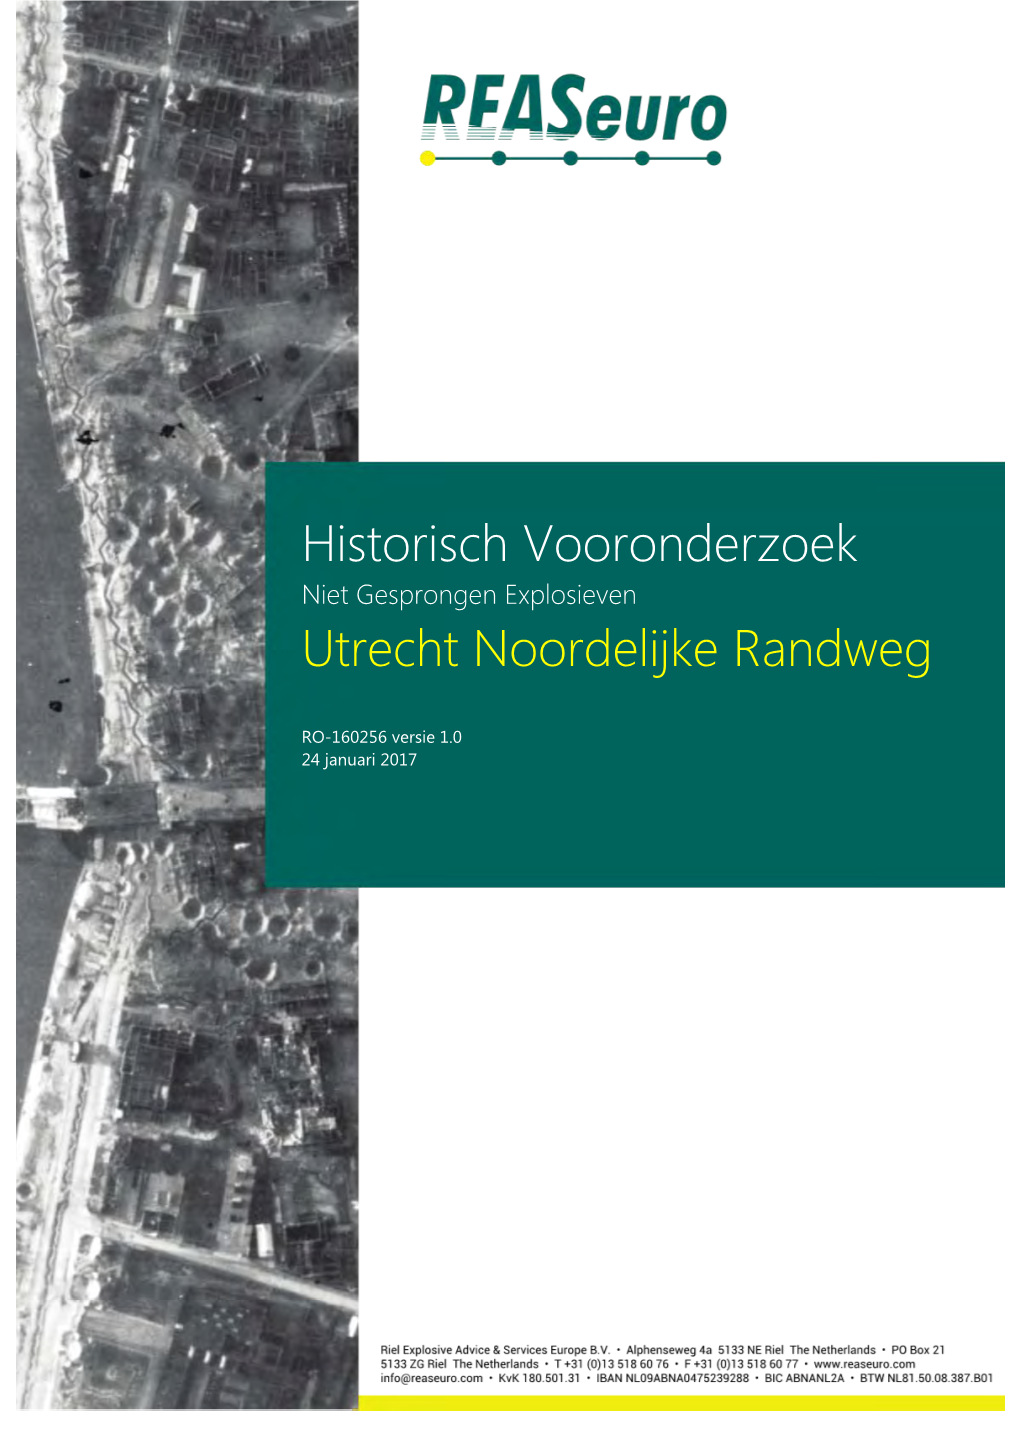 Historisch Vooronderzoek Utrecht Noordelijke Randweg